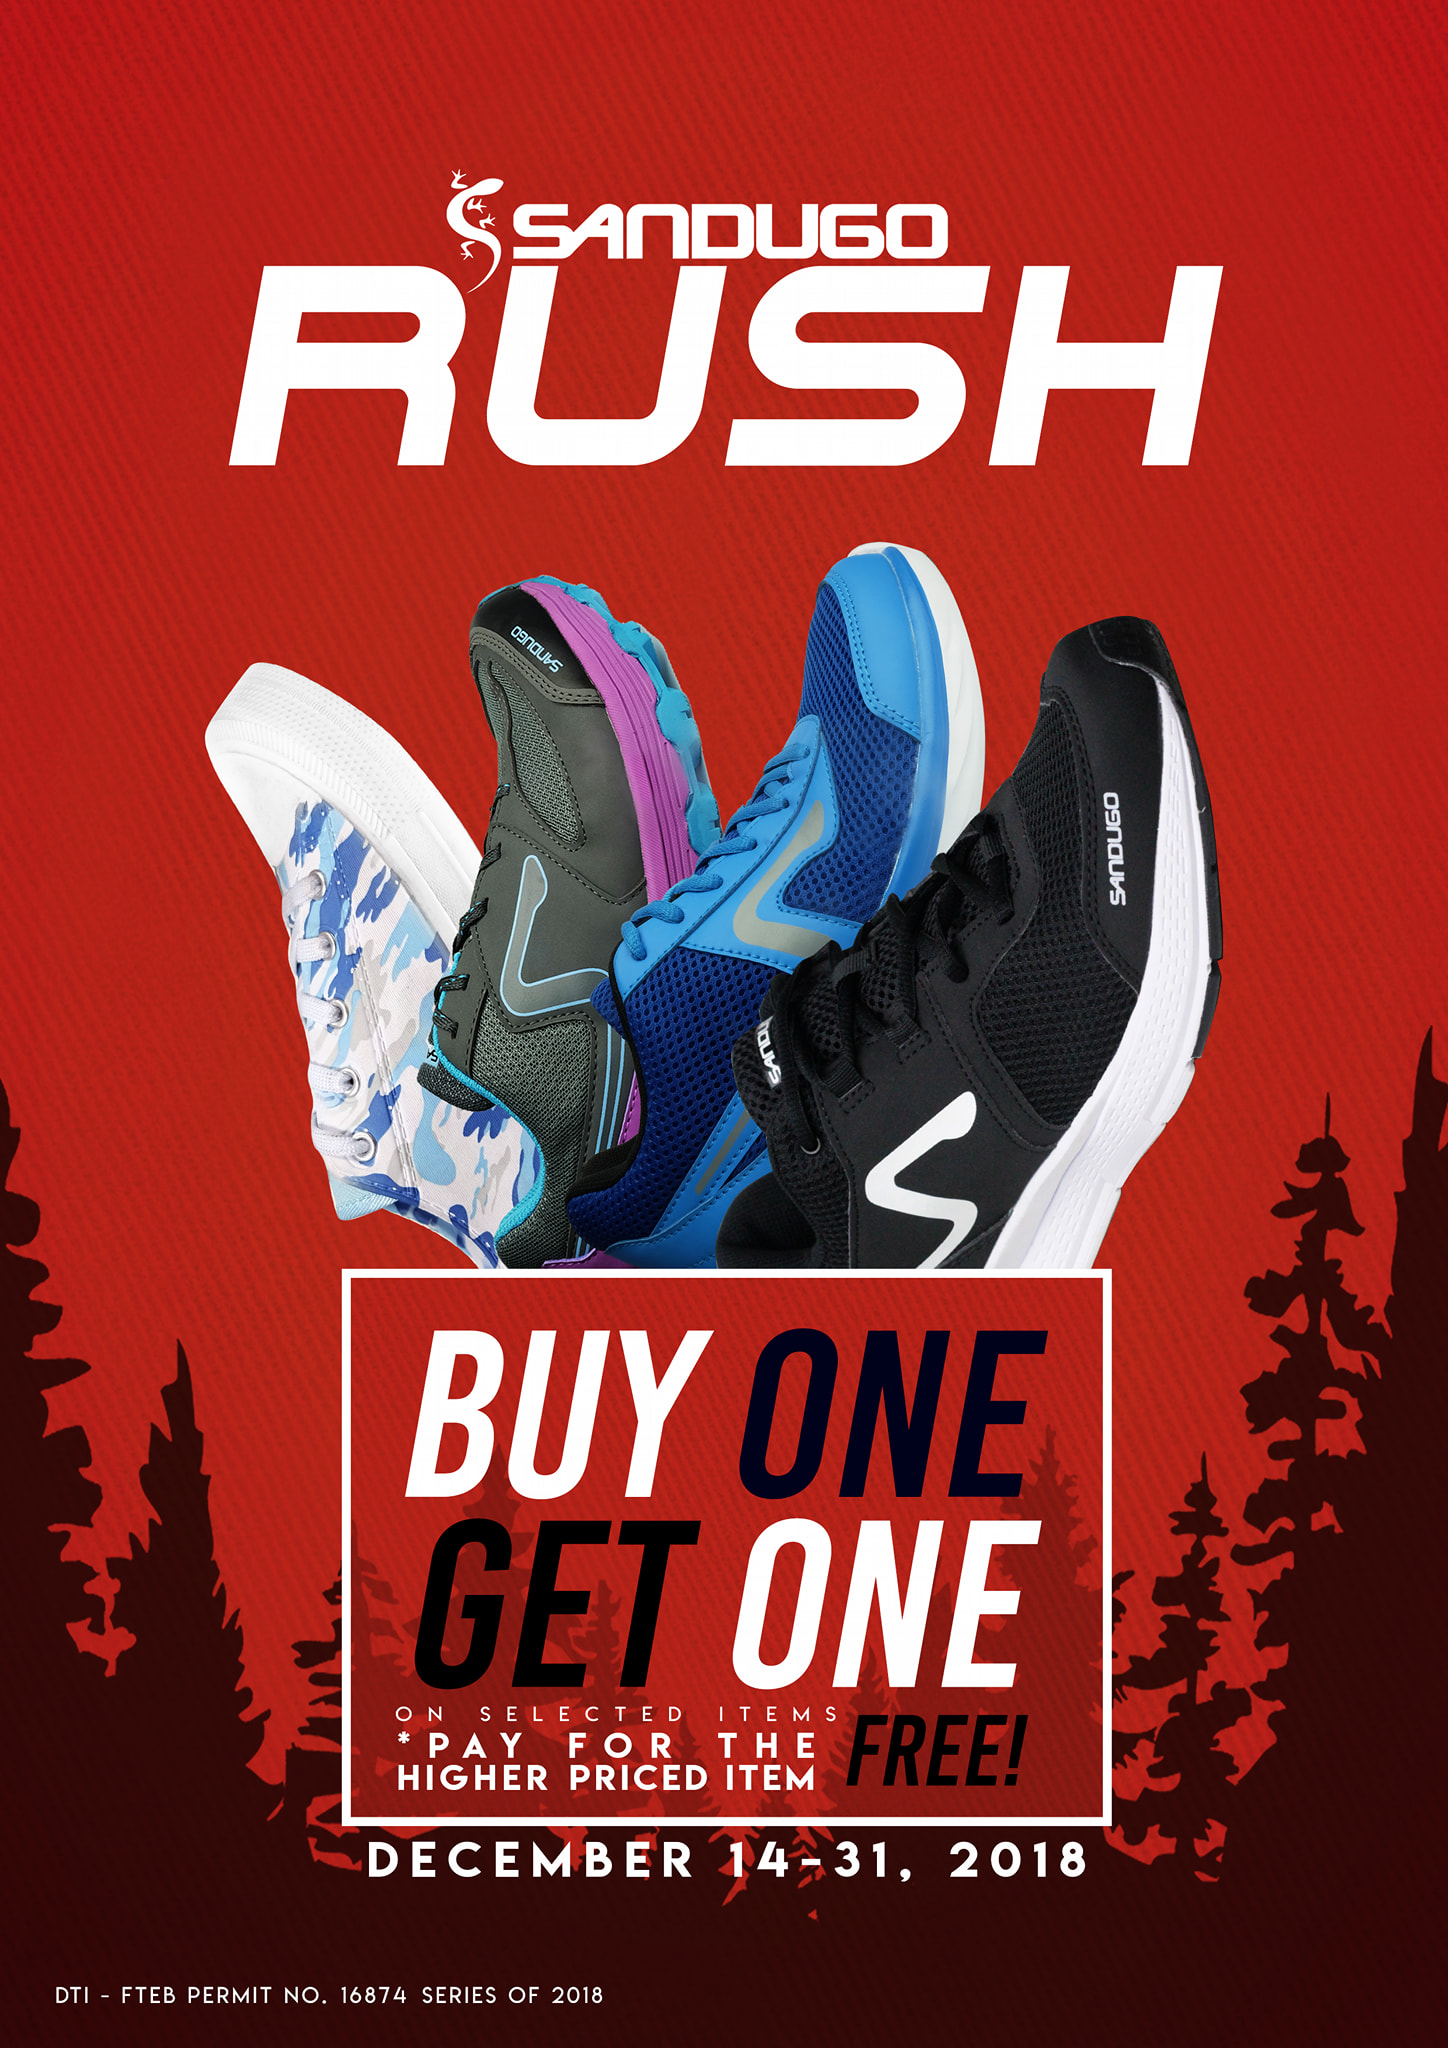 SANDUGO Rush Buy One Get One FREE Promo